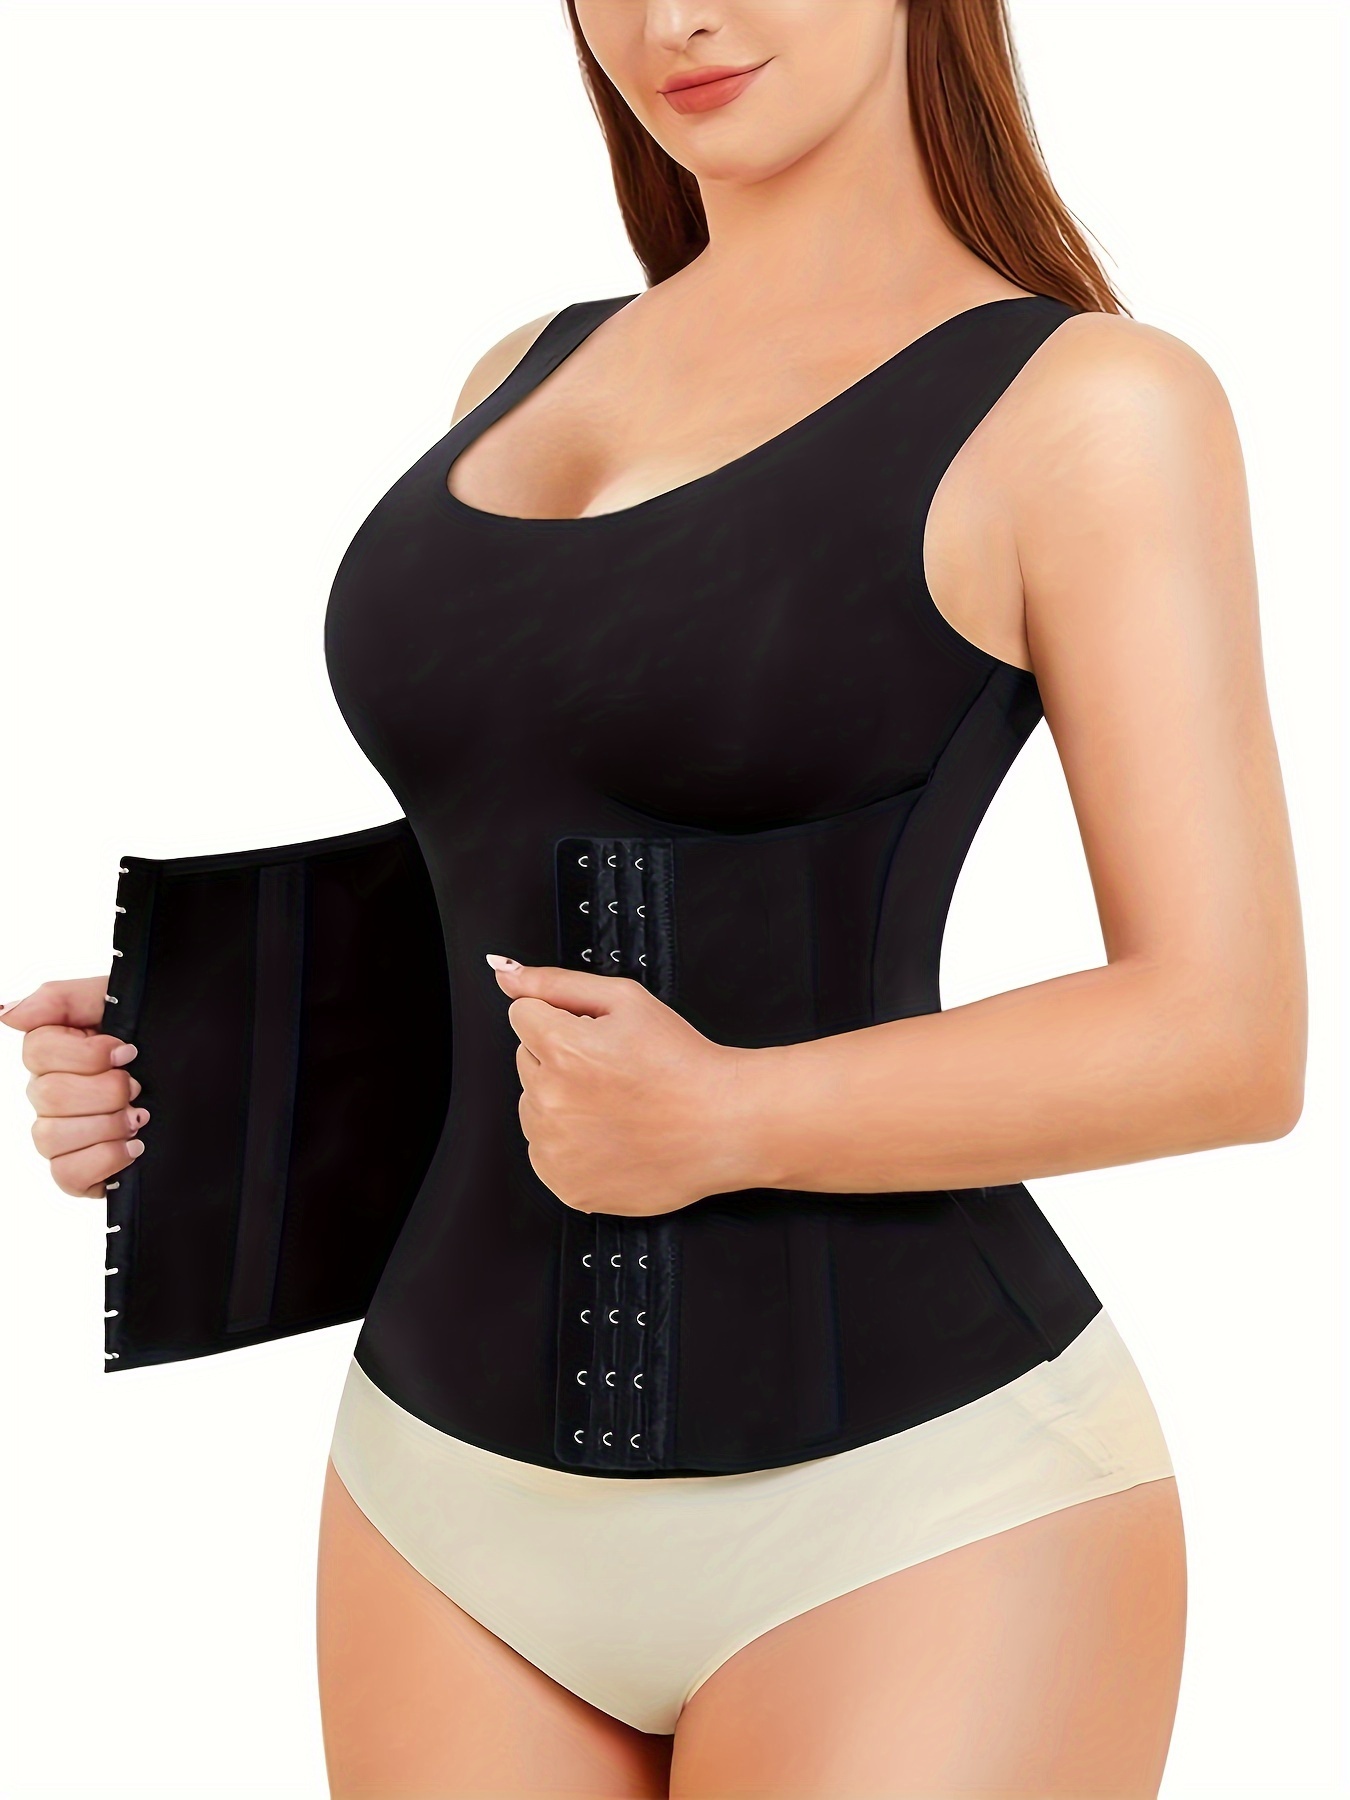 3-in-1 Waist Buttoned Bra Shapewear, Adjustable Straps Body Shaper Waist  Tank Top For Women's Shapewear Yoga Workout Underwear